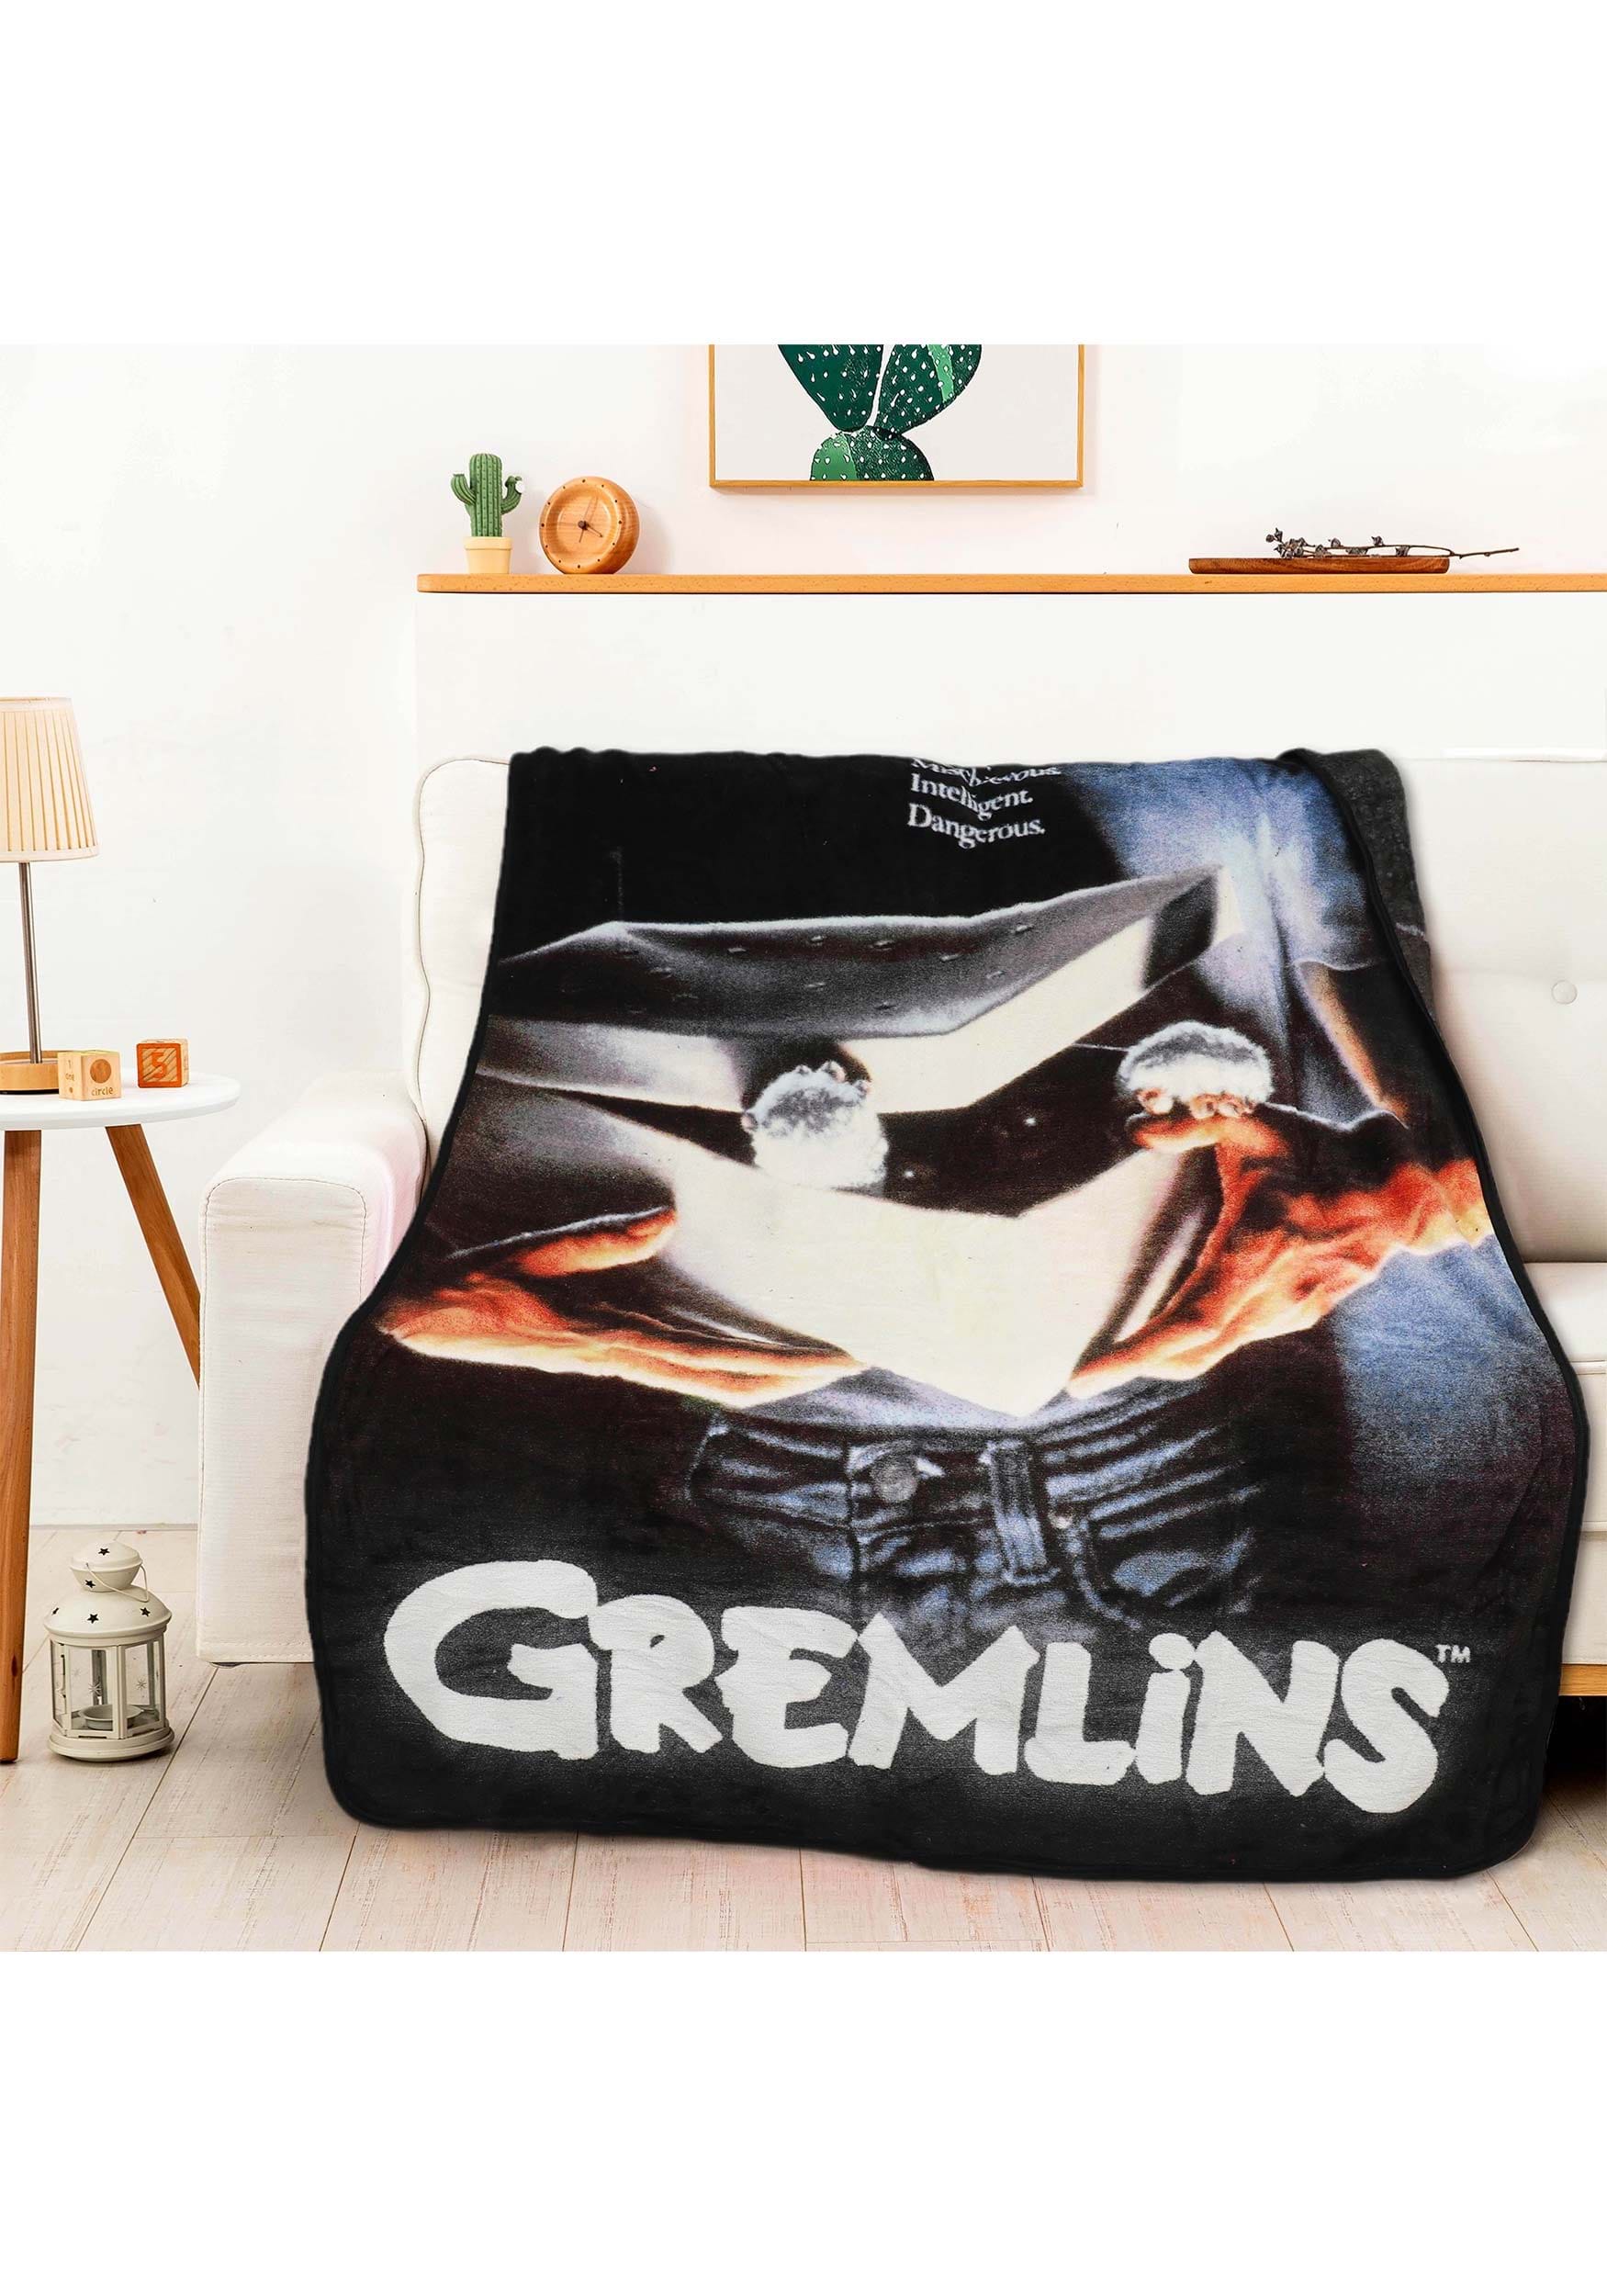 Gremlins Dangerous Movie Poster Micro Raschel Comfy Throw Blanket